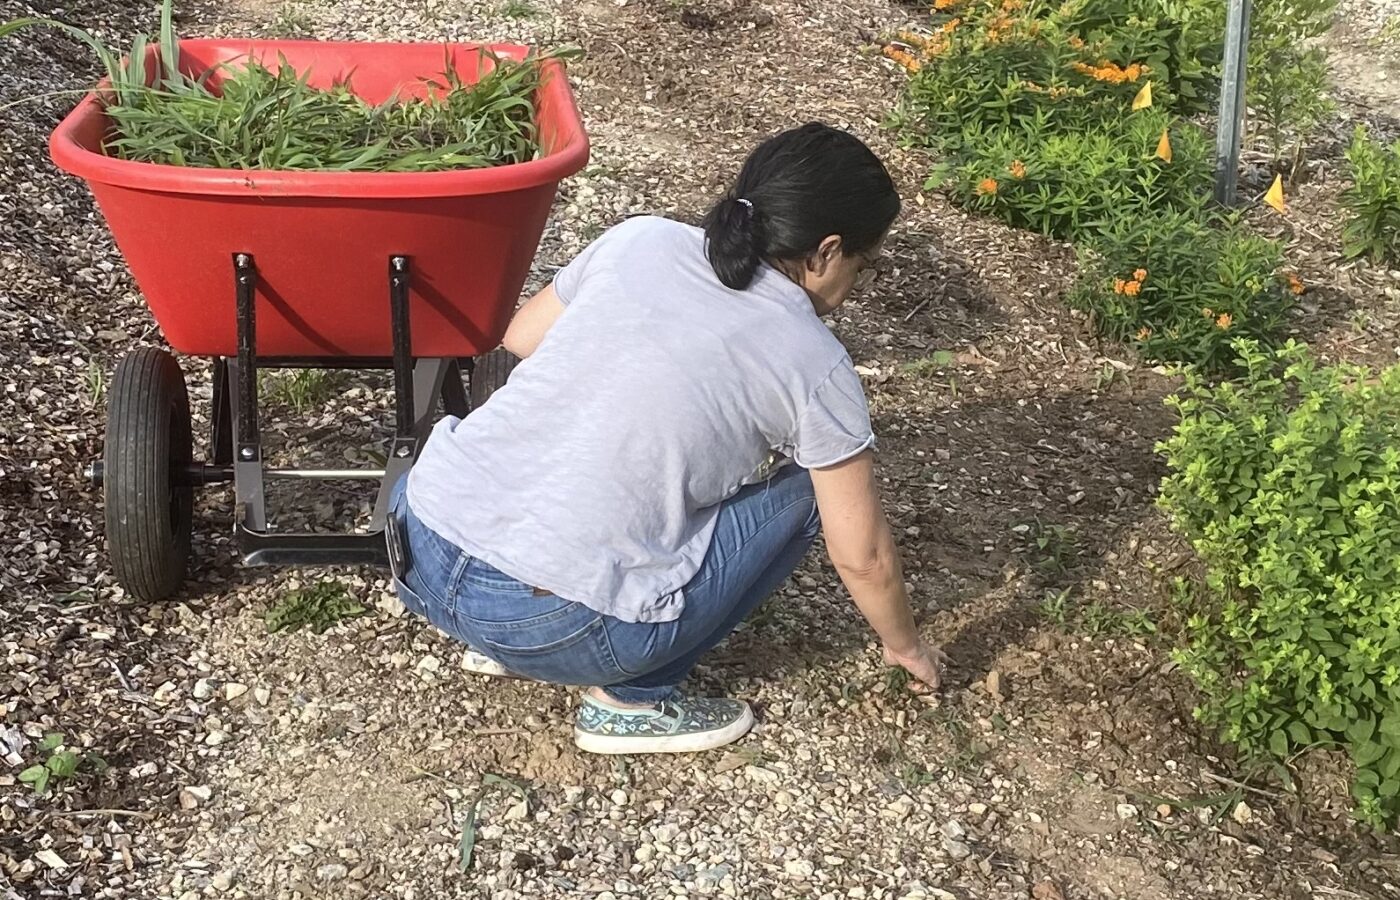 Volunteer working at the pollinator garden